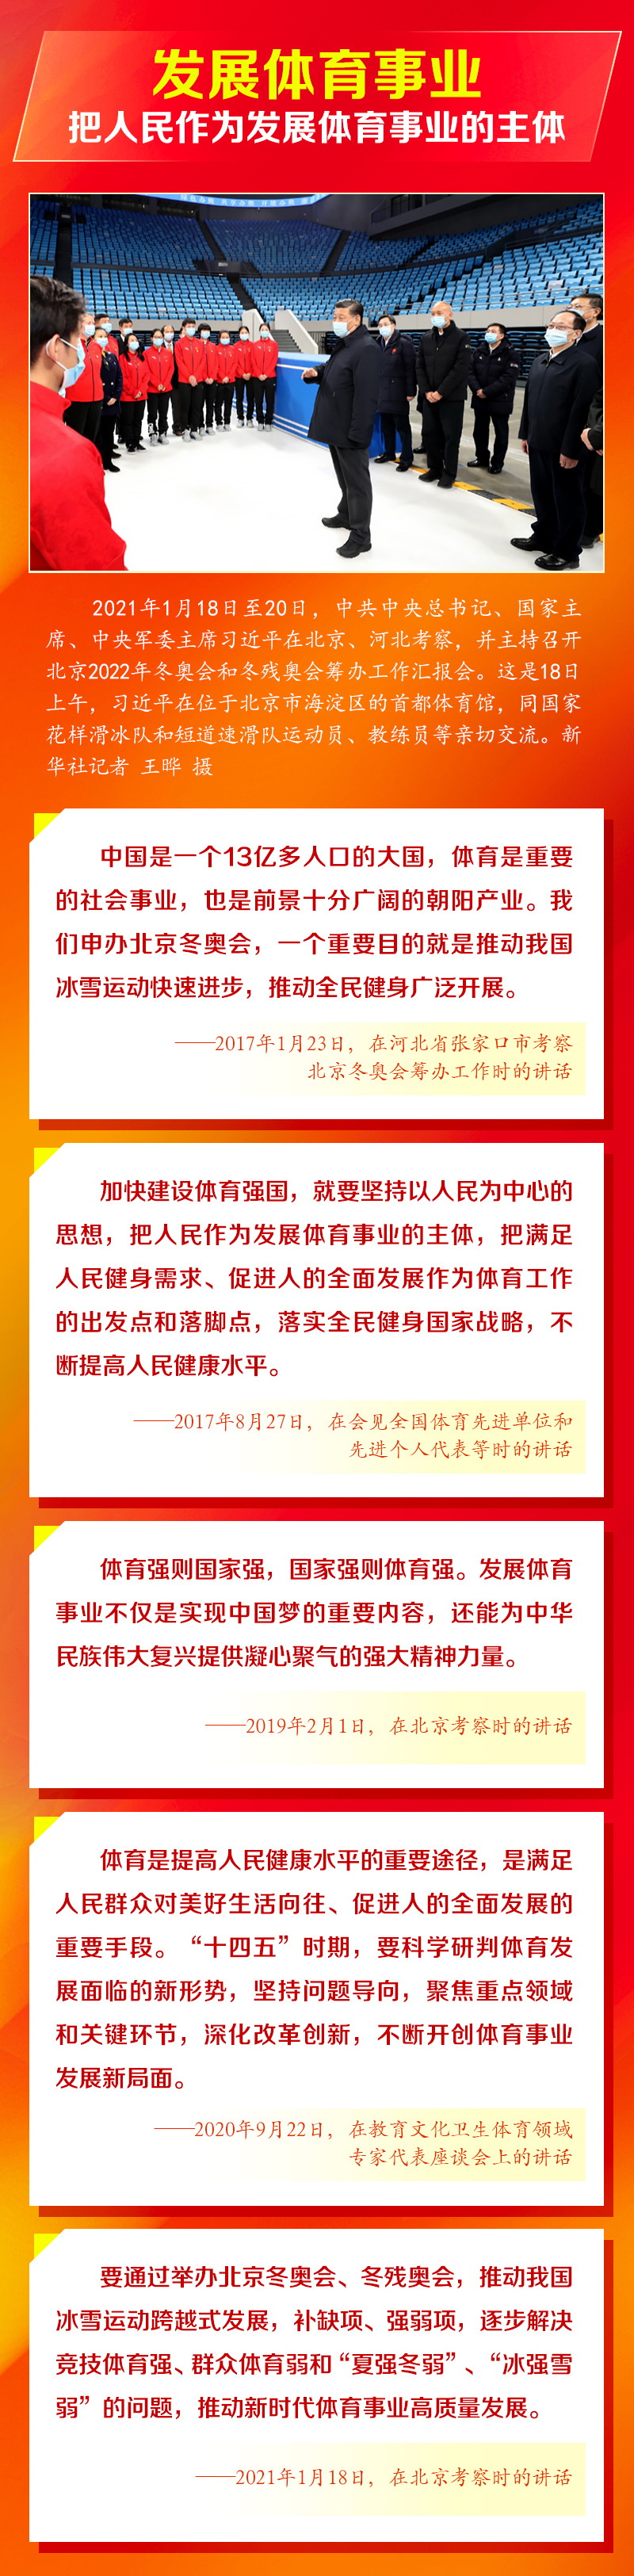 国运兴则体育兴 人民网-中国共产党新闻网2.jpg